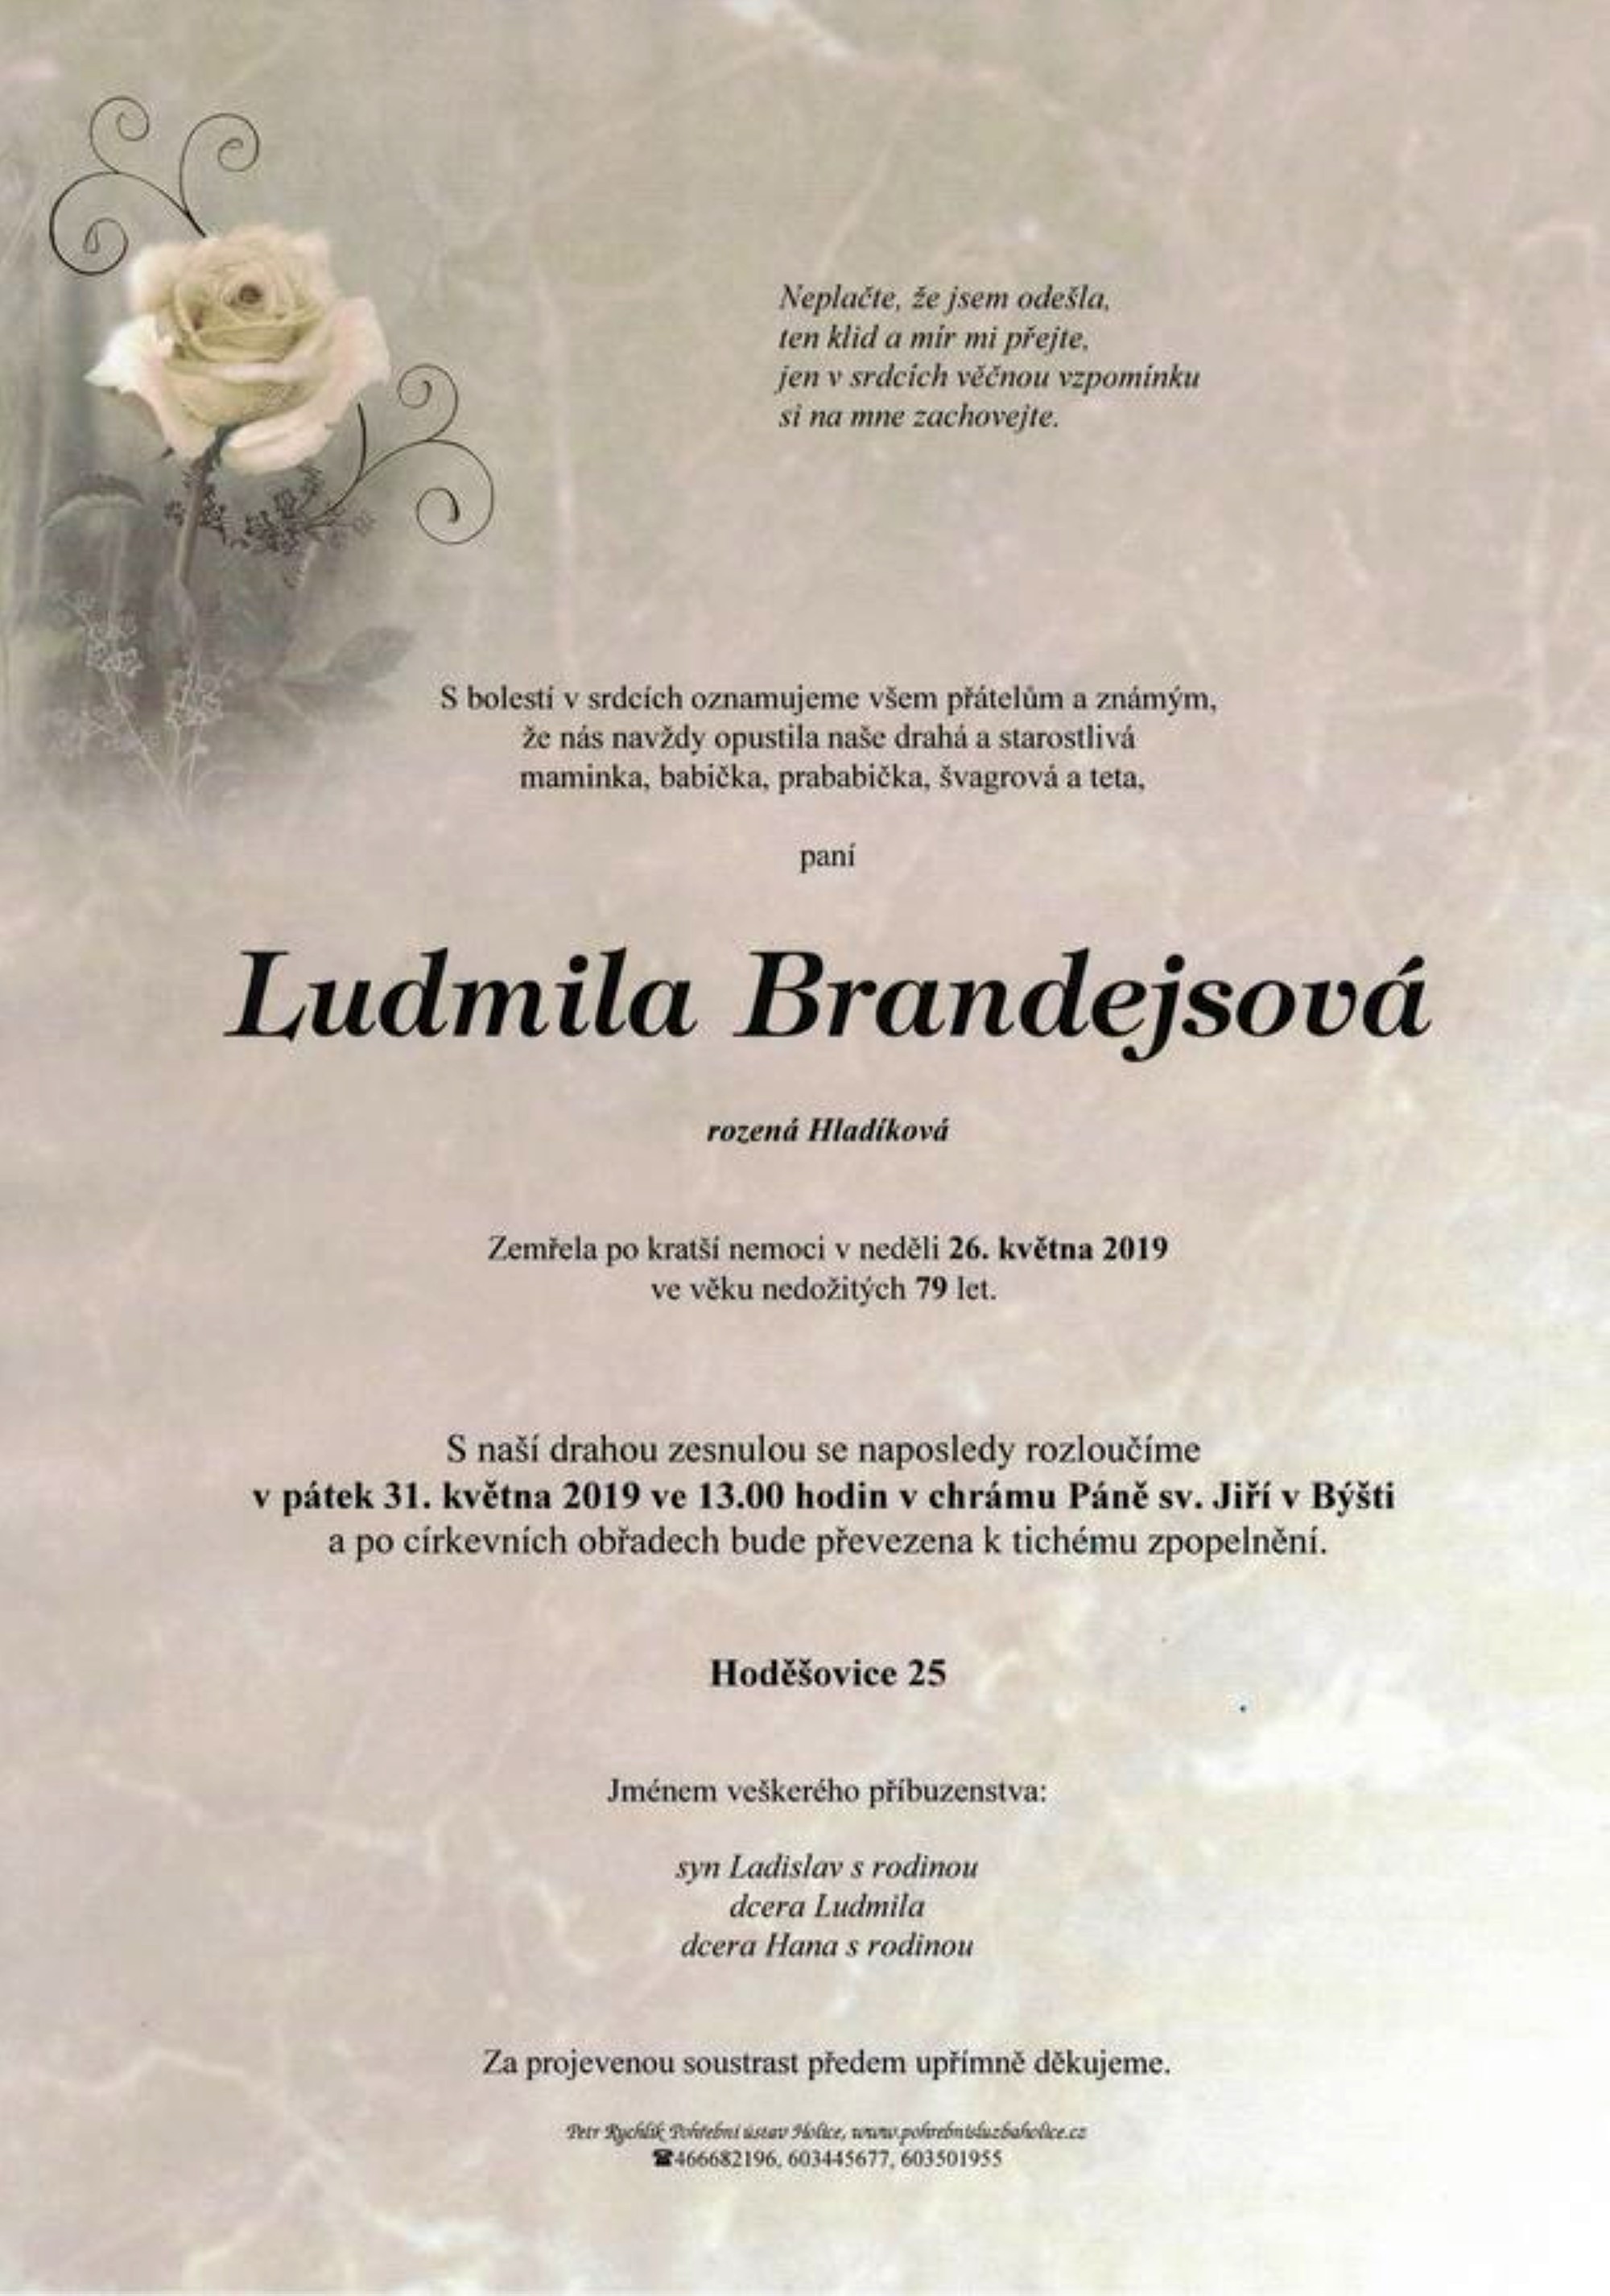 Ludmila Brandejsová